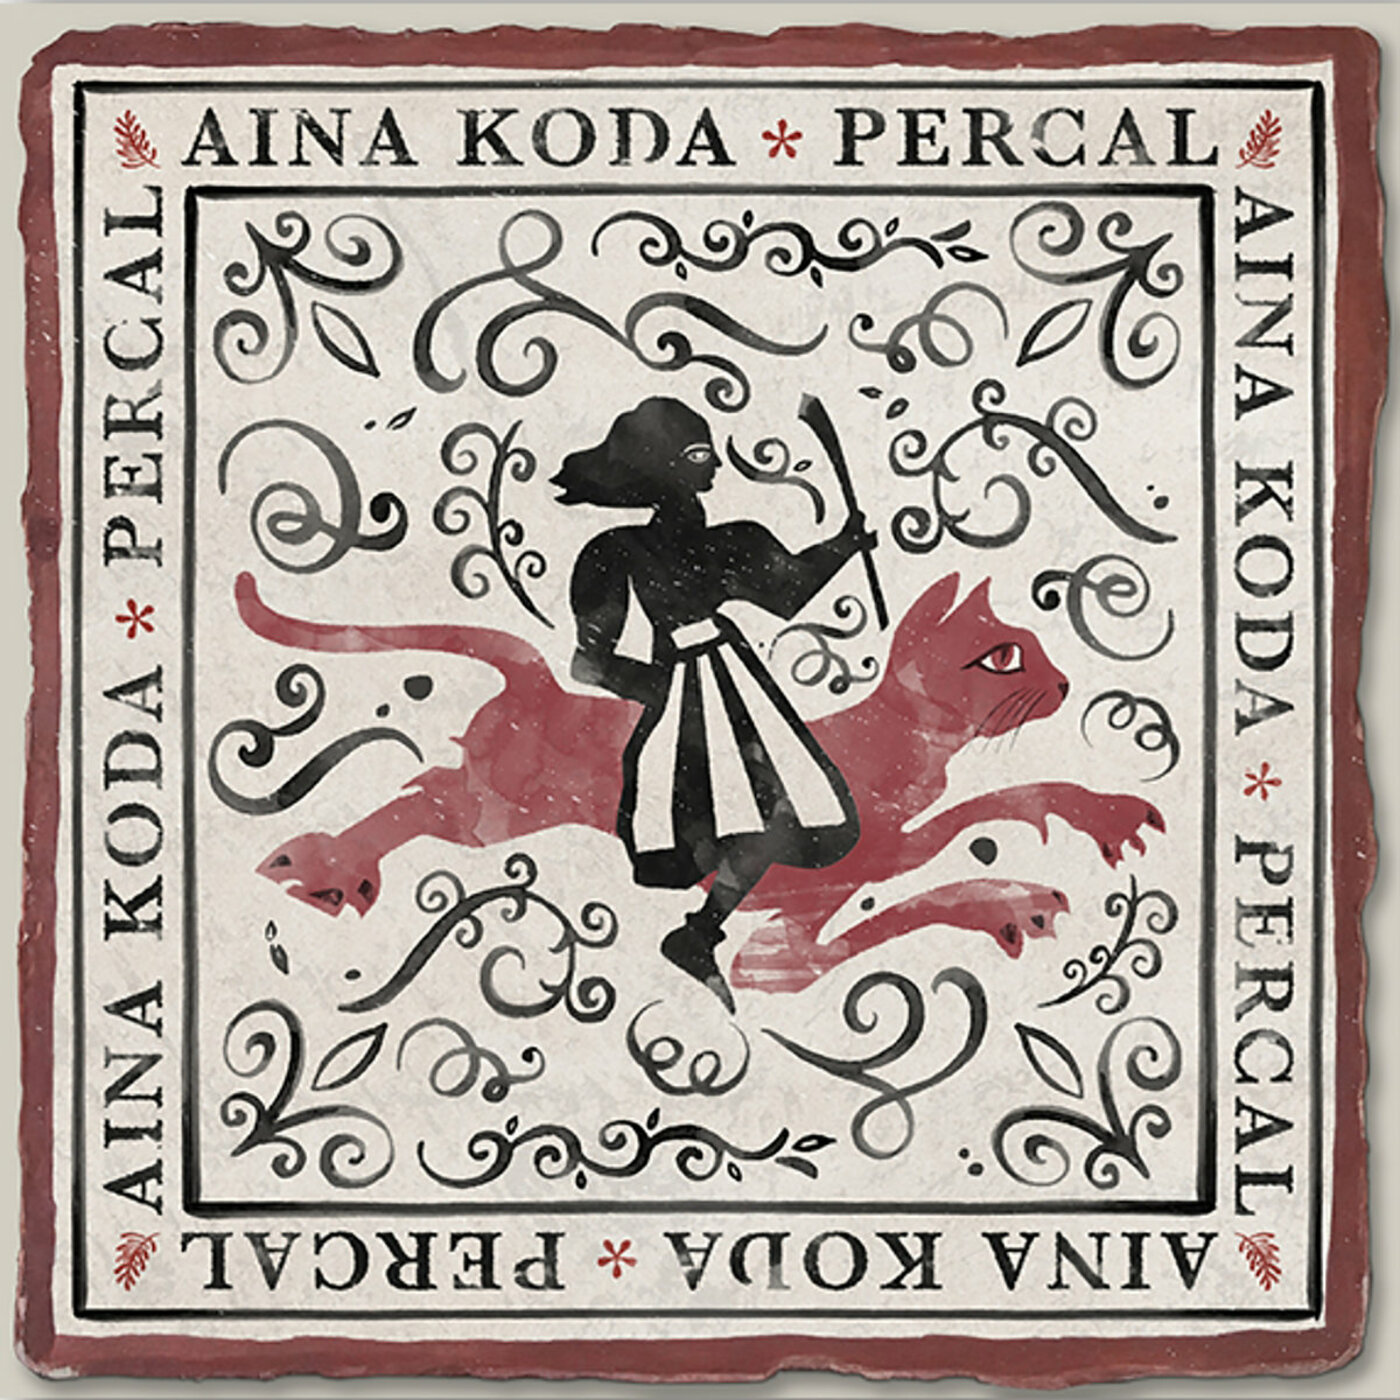 Aina Koda - Percal  | musica en valencià